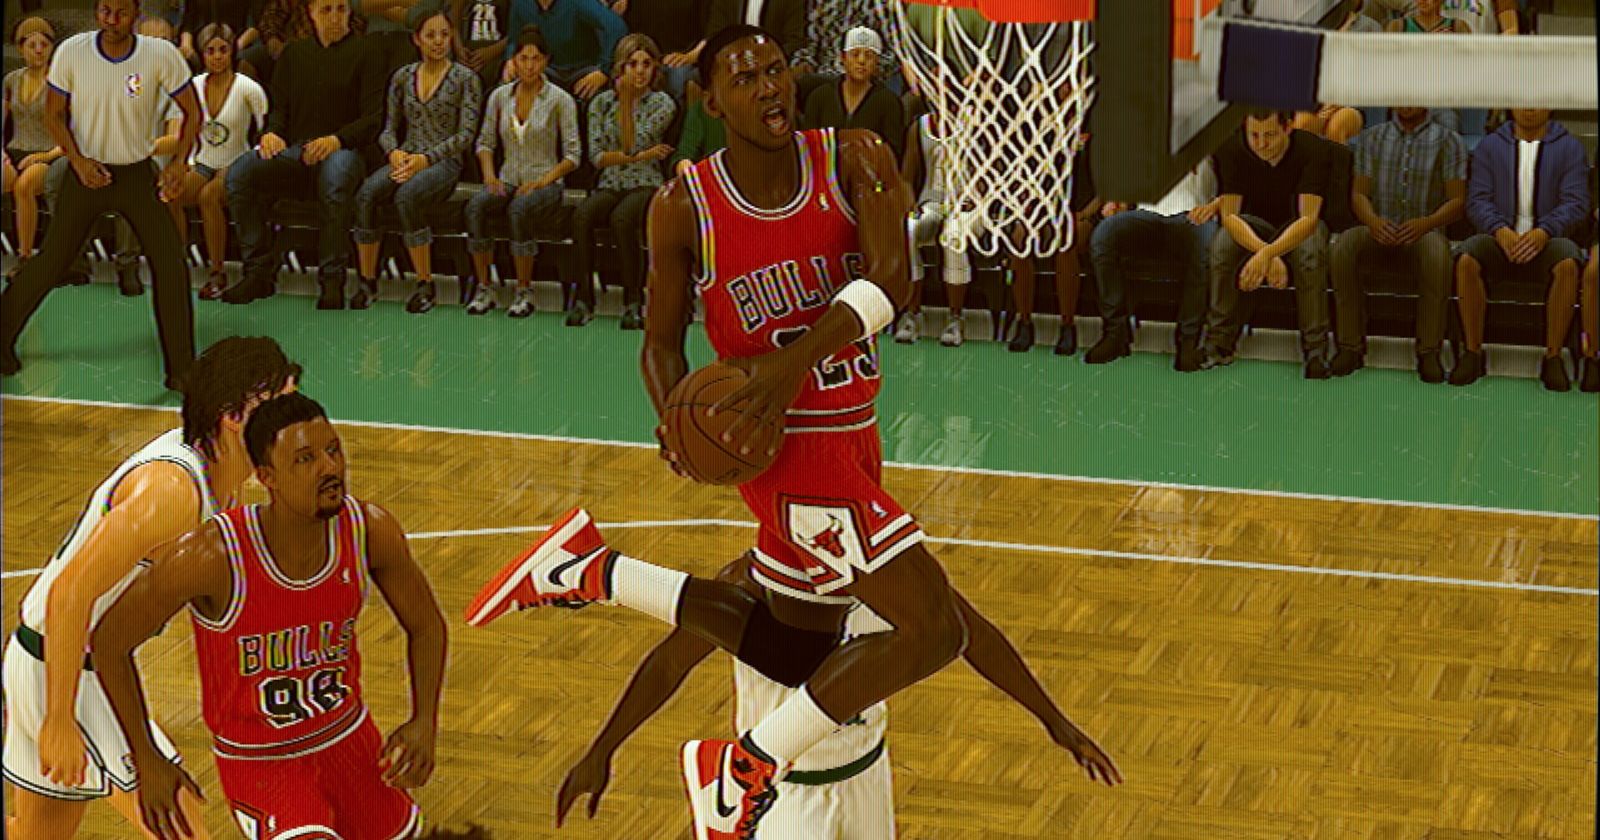 Fan favorite game mode returns in Michael Jordan edition of NBA 2K23